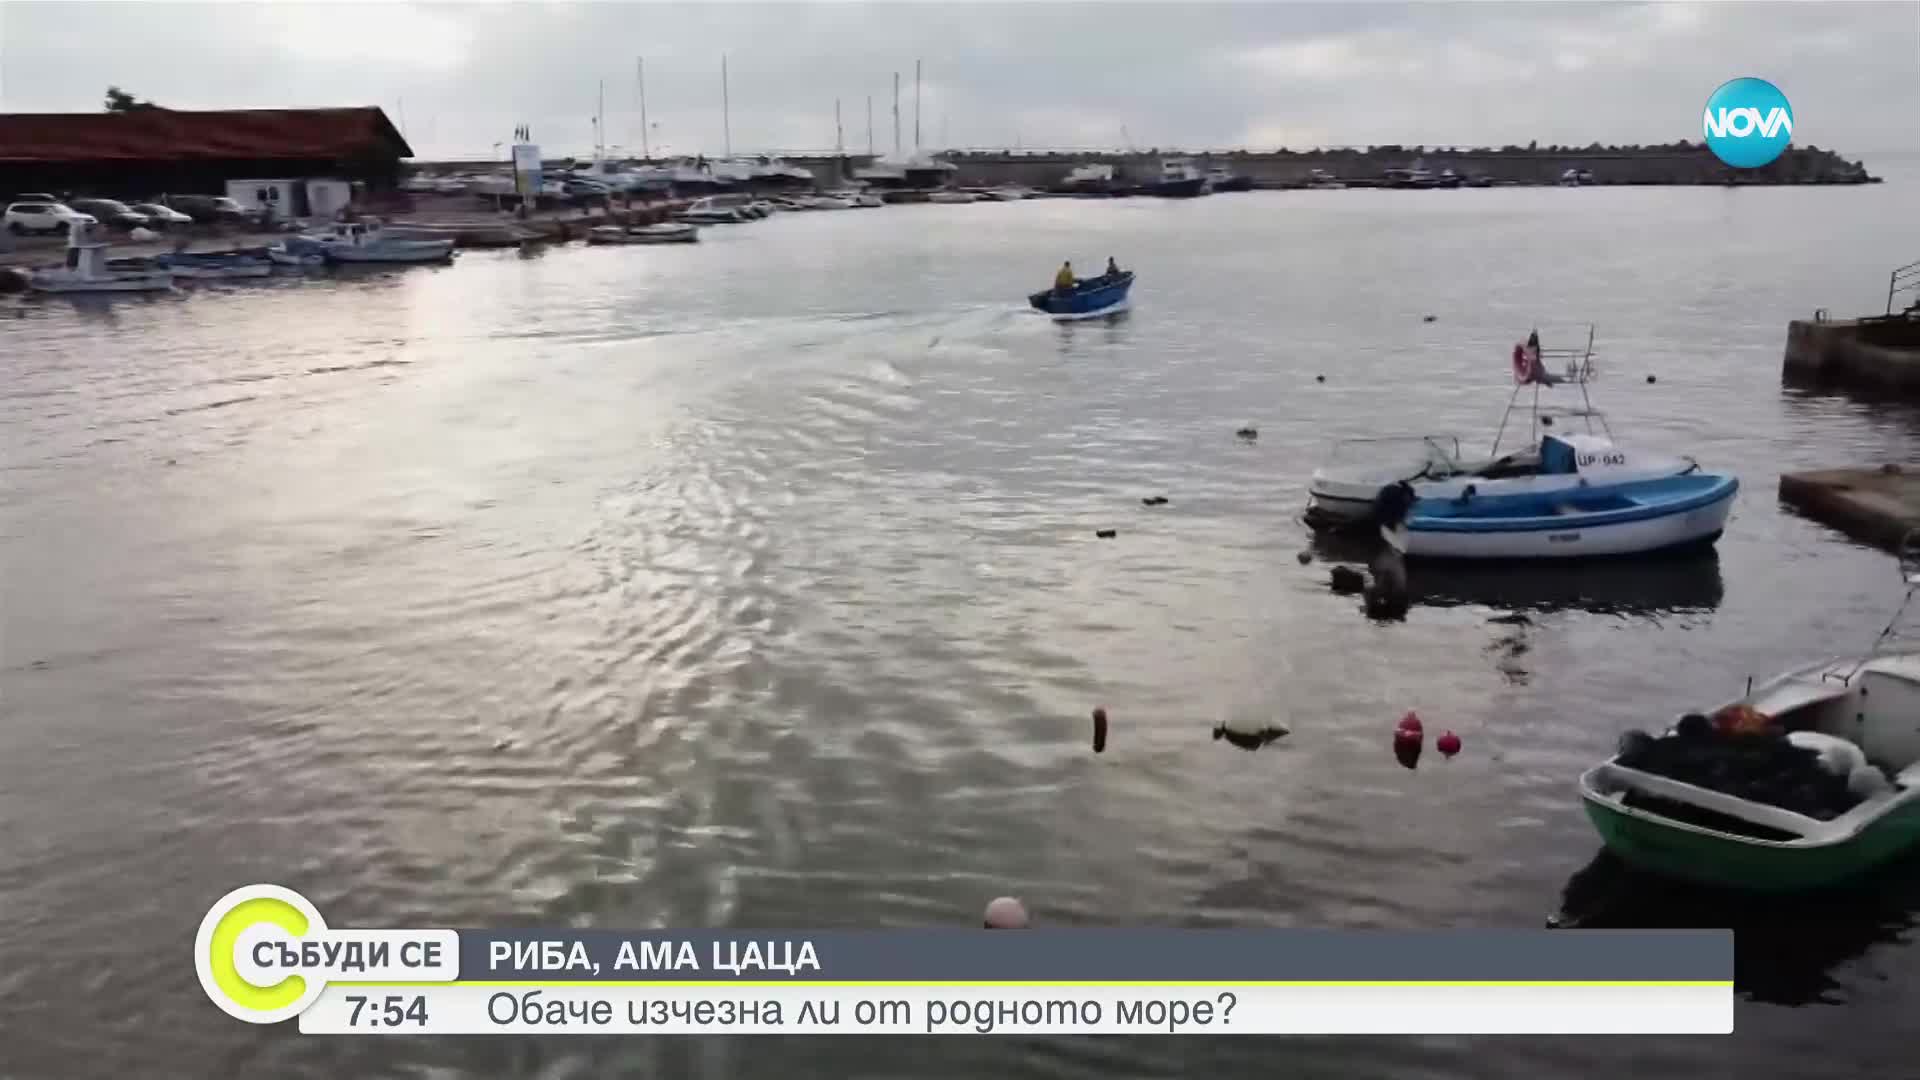 АНОМАЛИИ В УЛОВА: Сьомгова пъстърва плува в Черно море, цацата изчезна